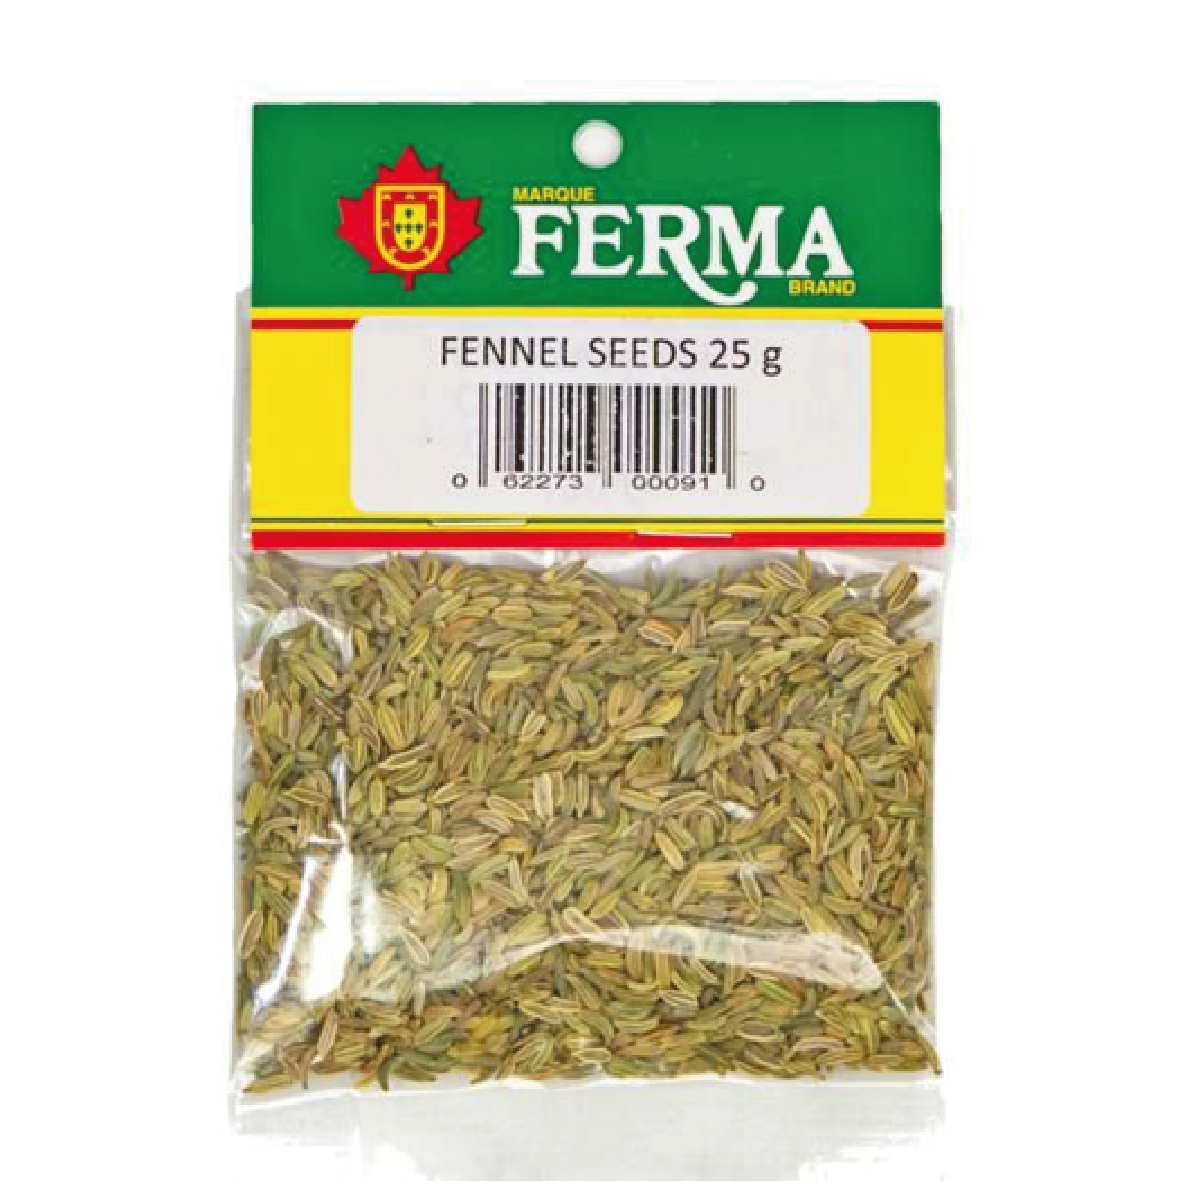 Ferma Fennel Seeds 25g